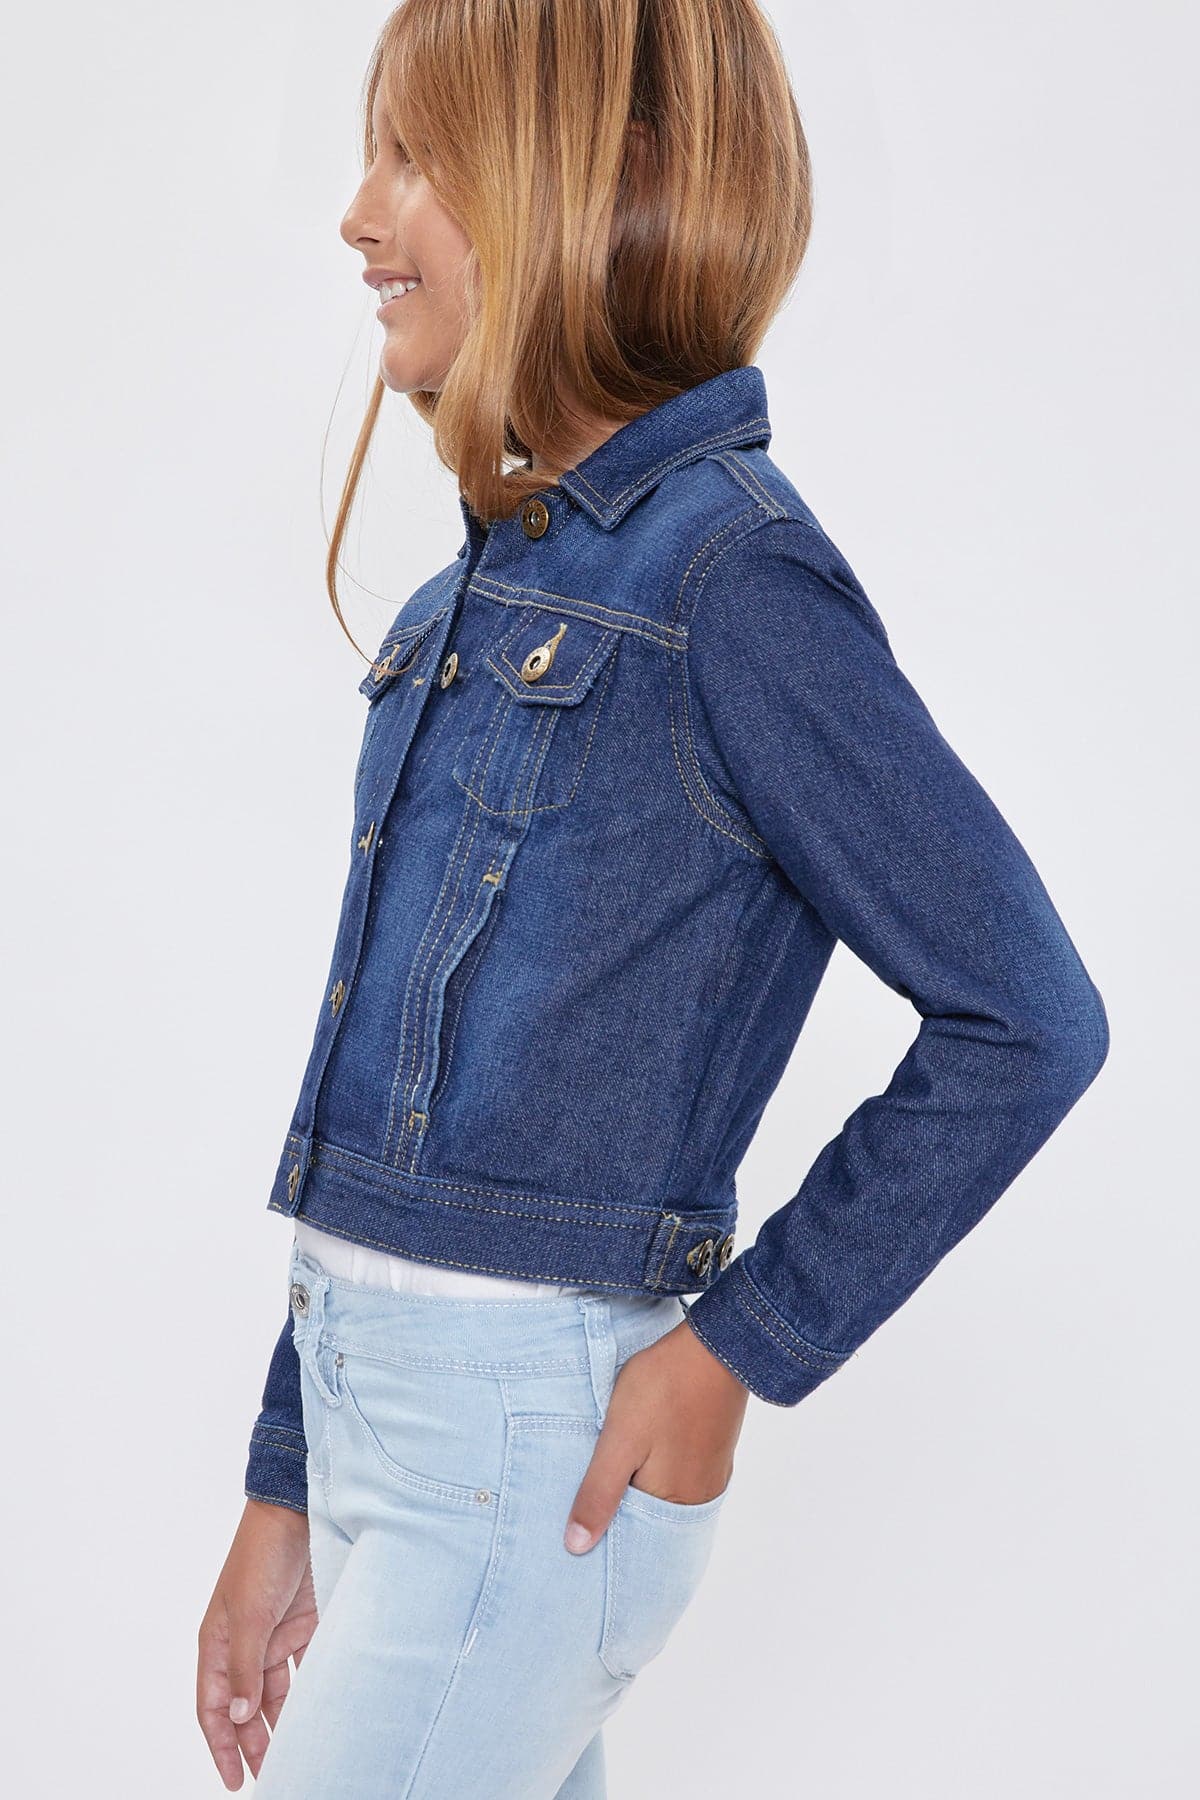 Girls Drop Shoulder Oversized Denim Jacket With Pockets Gj18876